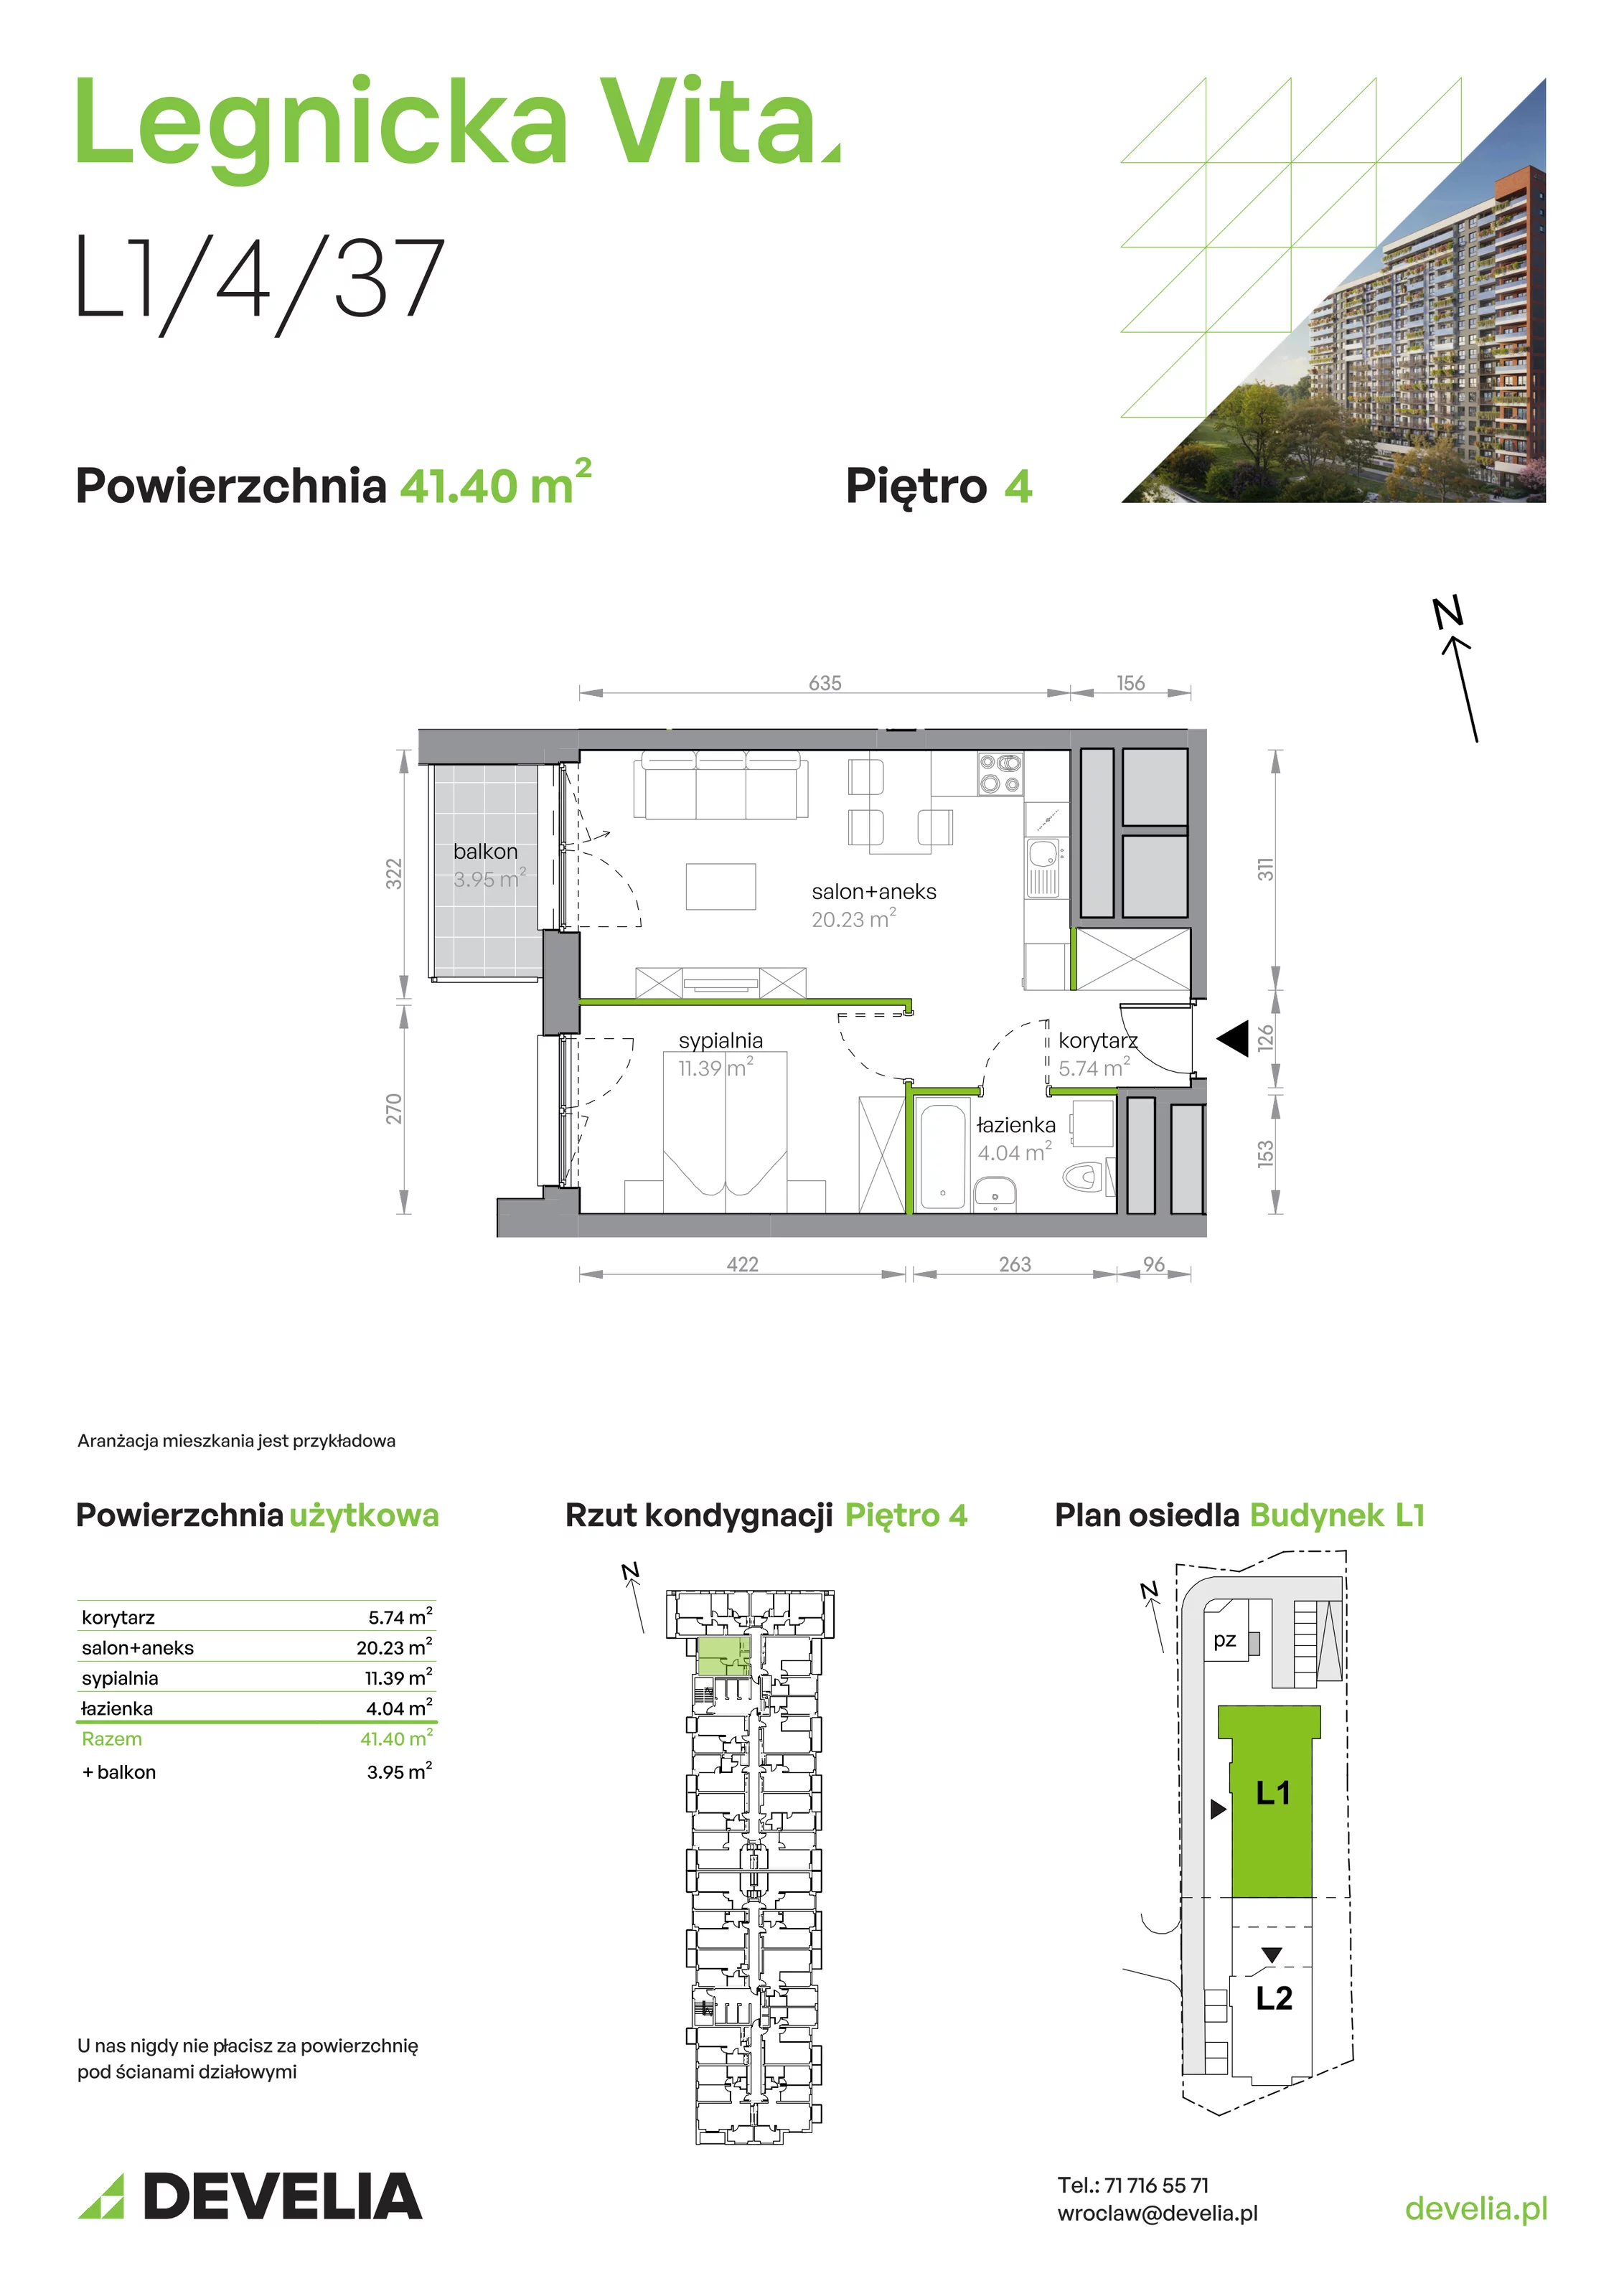 Mieszkanie 41,40 m², piętro 4, oferta nr L1/4/37, Legnicka Vita, Wrocław, Gądów-Popowice Południowe, Popowice, ul. Legnicka 52 A